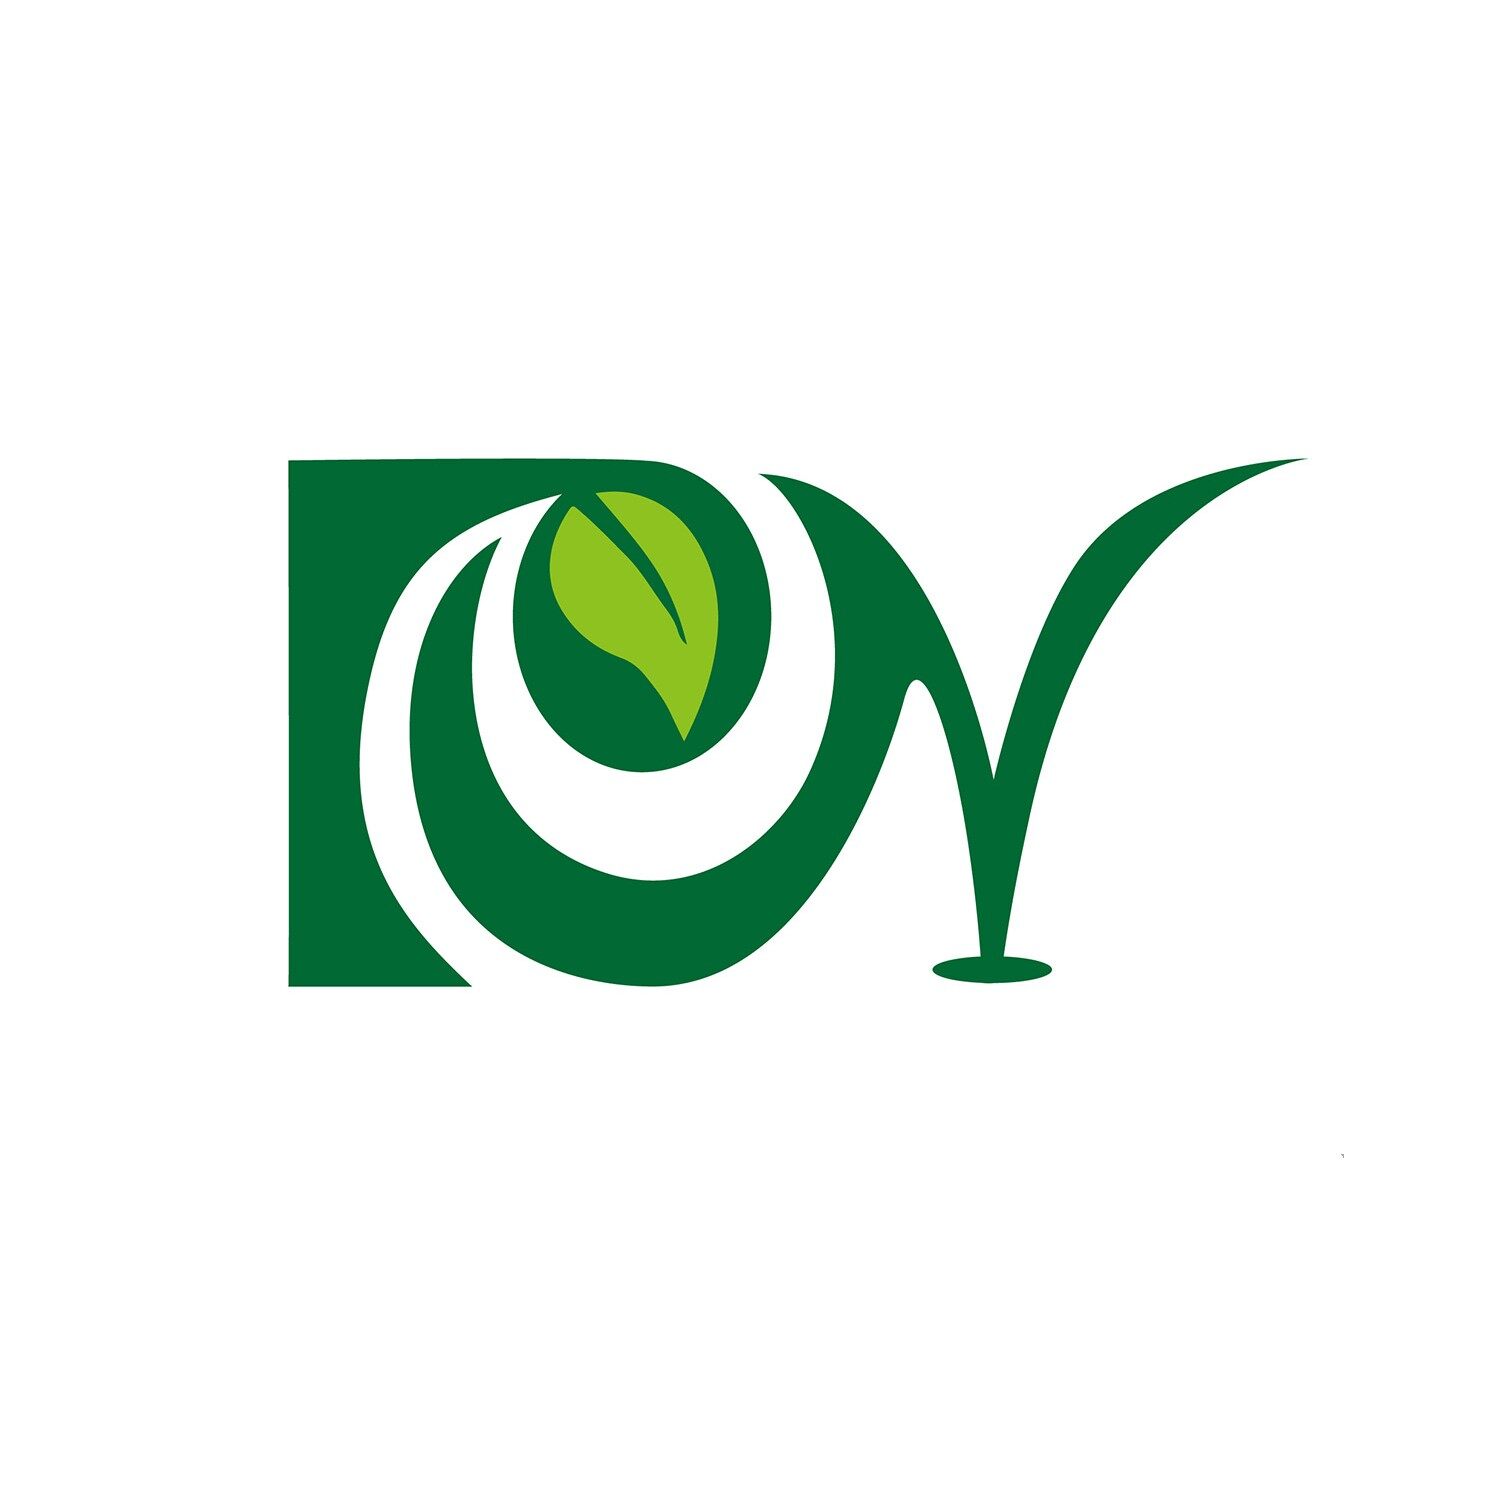 佛山市瑞农食品贸易有限公司logo